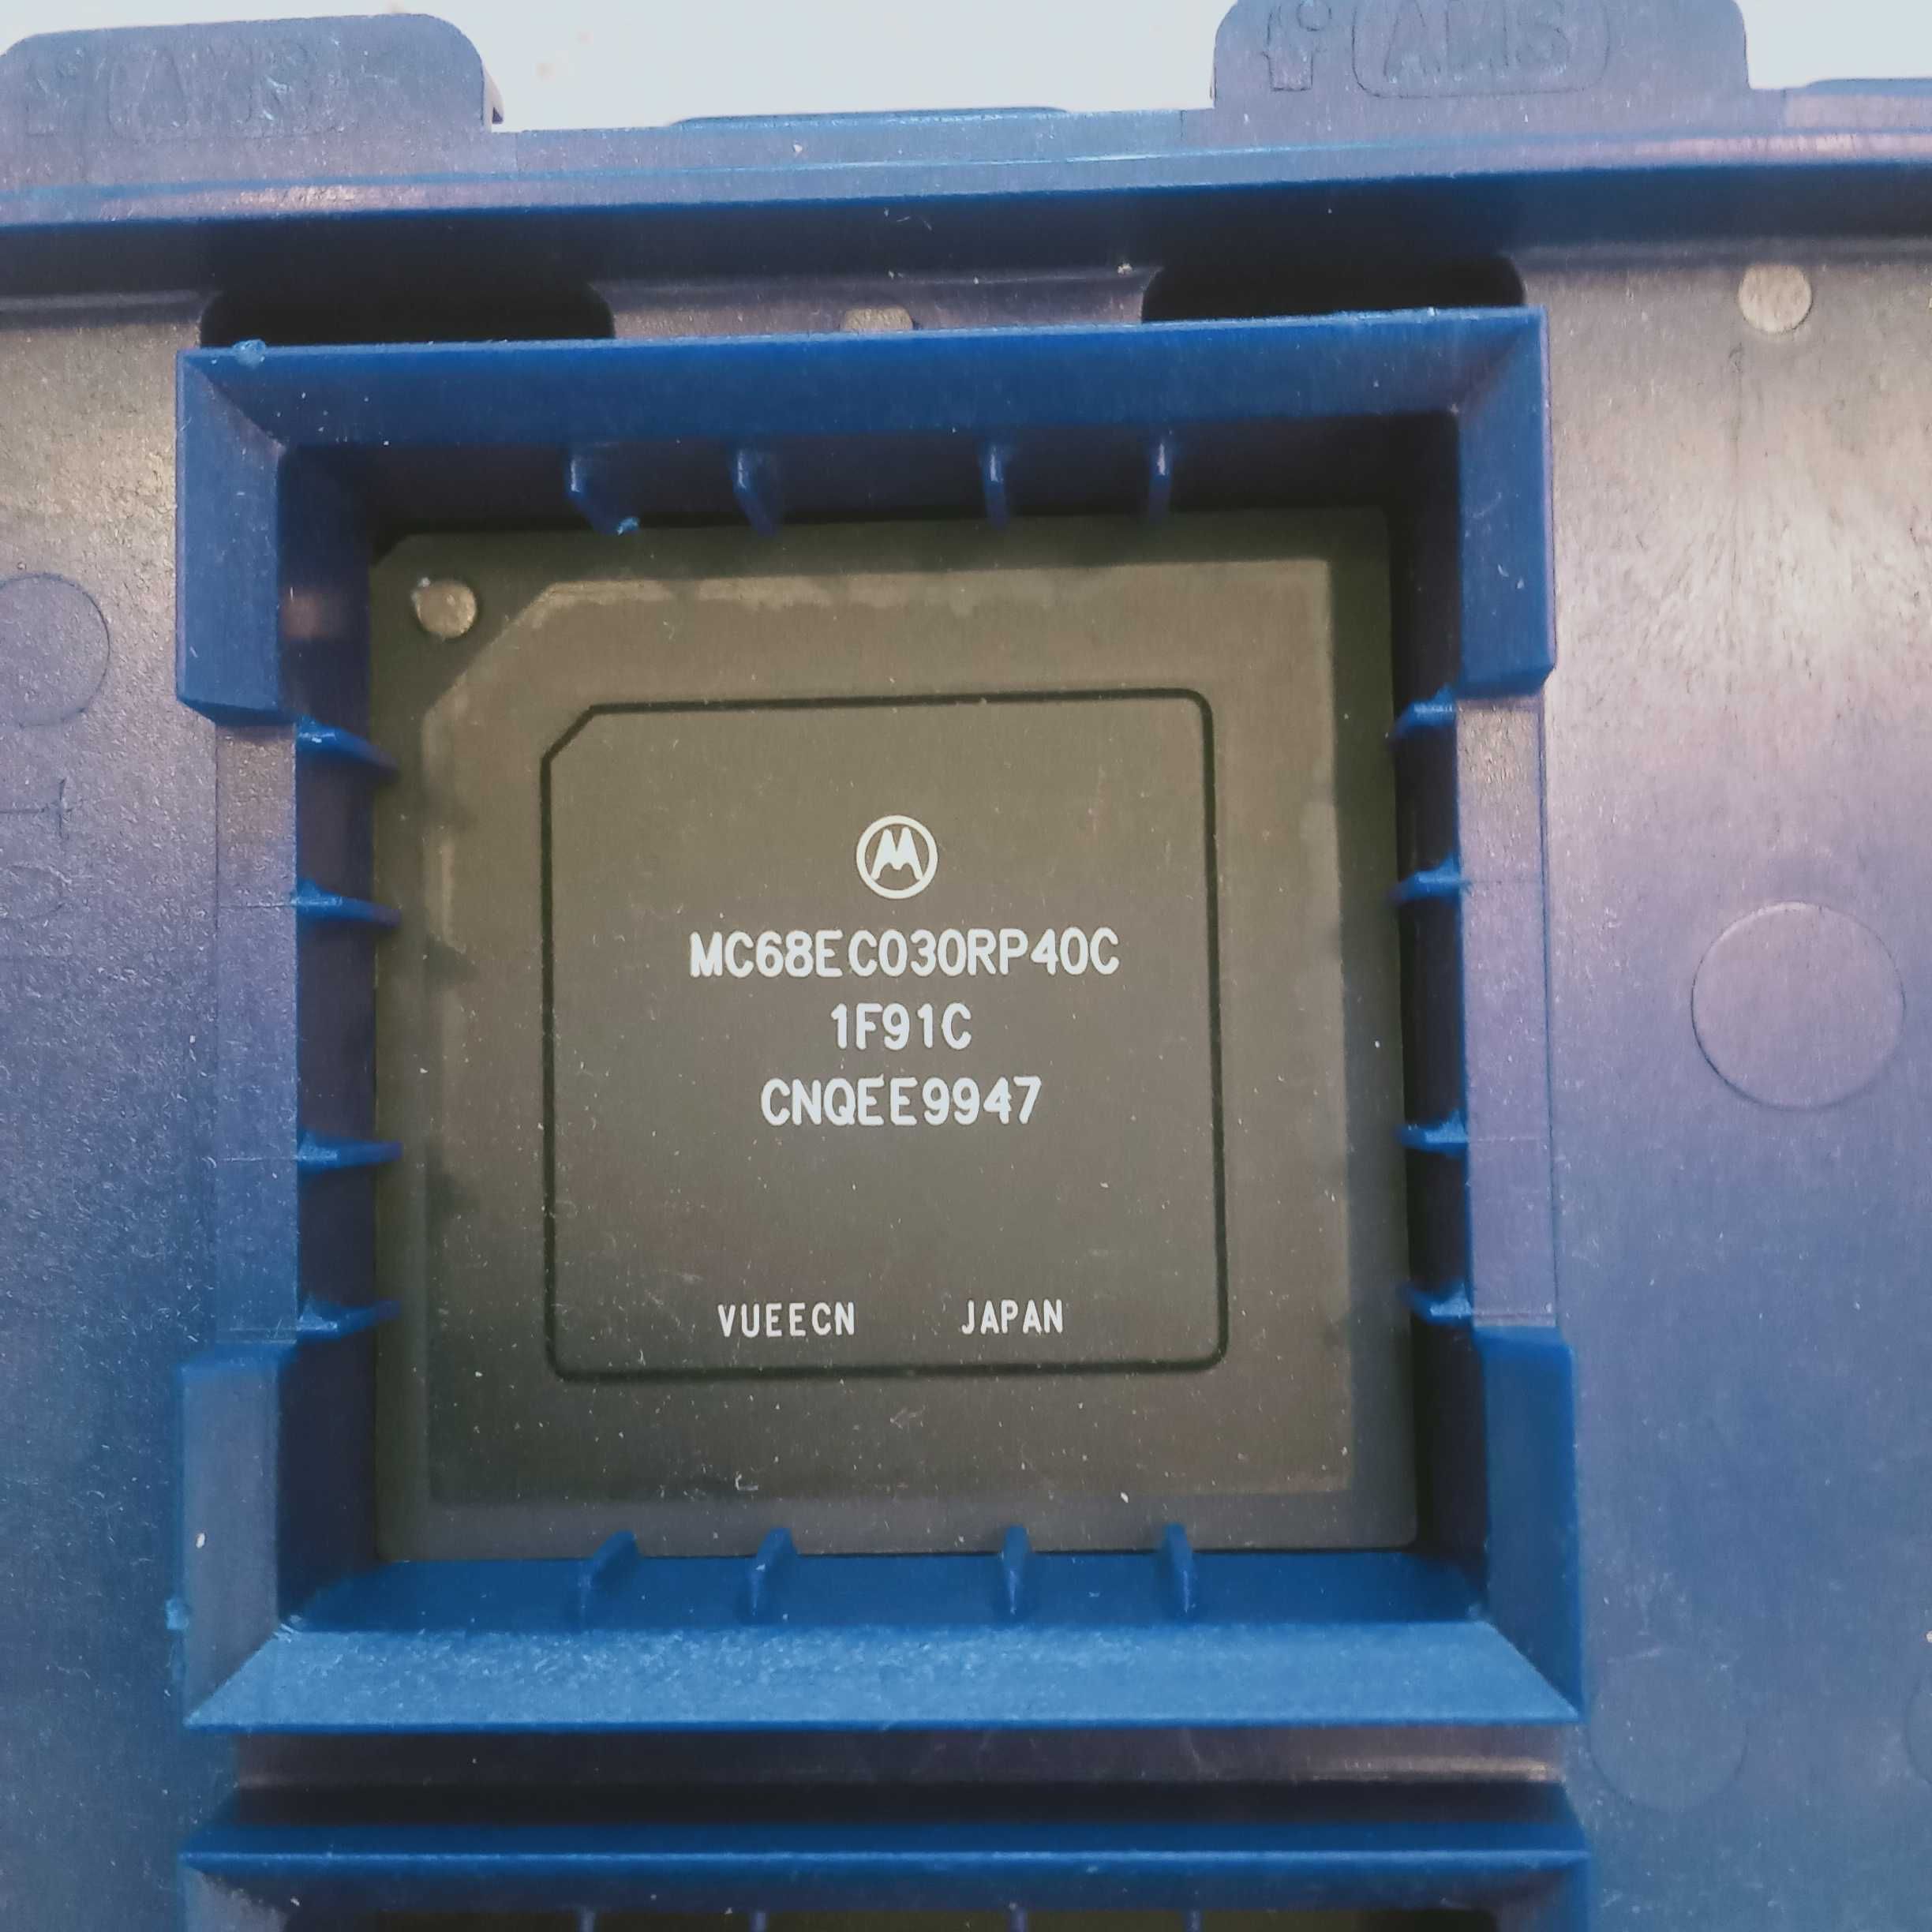 MC68EC030RP40C, procesor